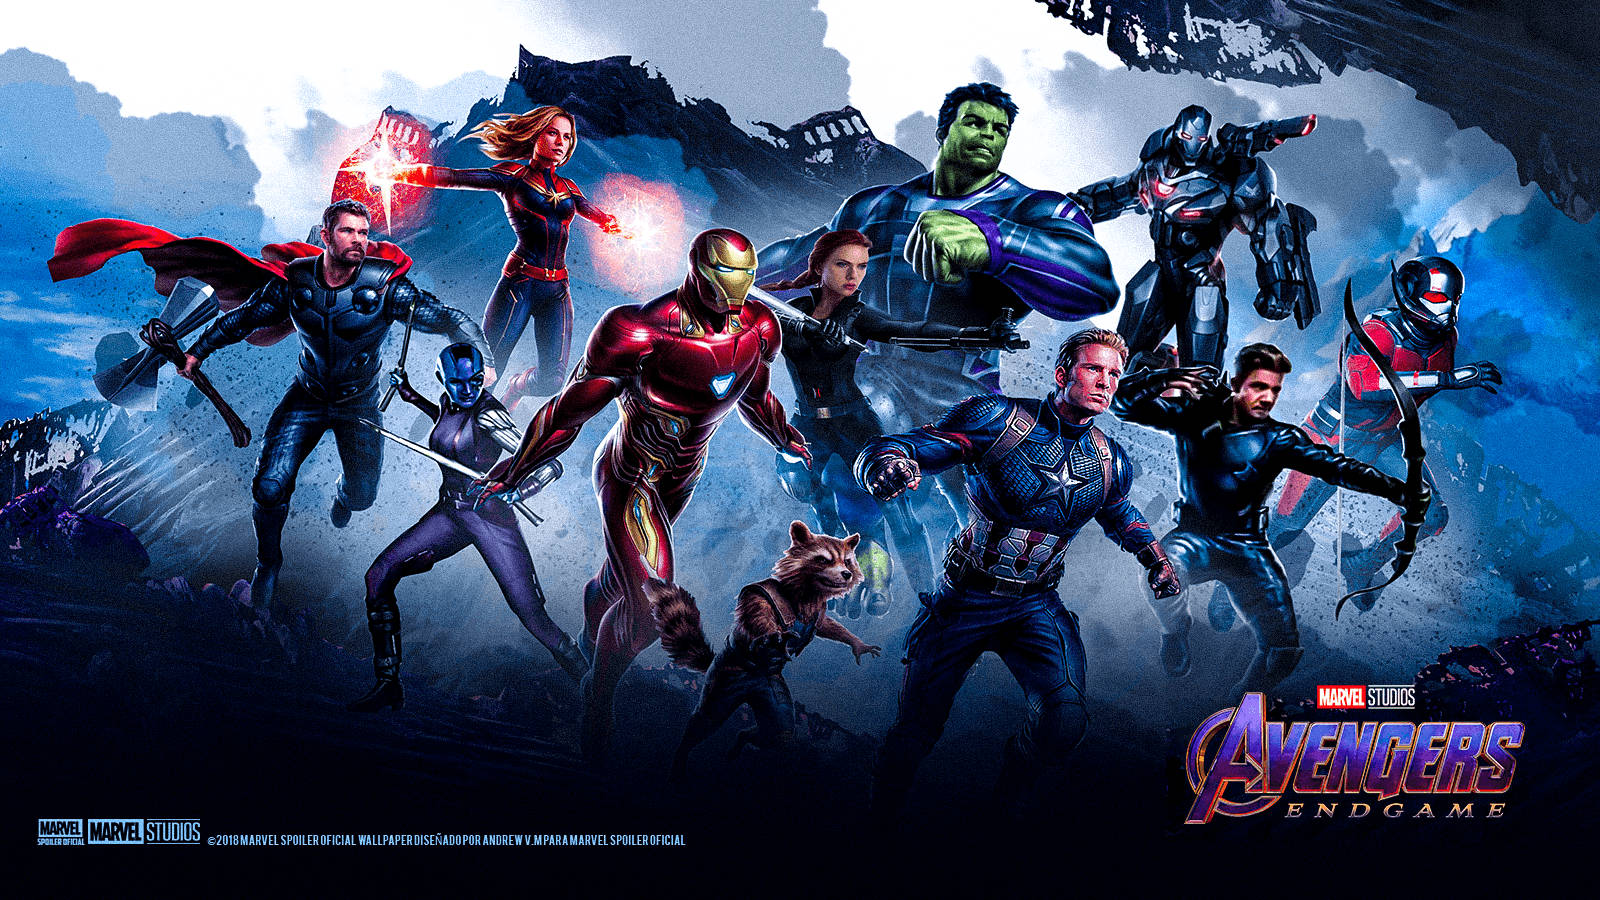 The Avengers assemble for one final battle in Avengers Endgame. Wallpaper